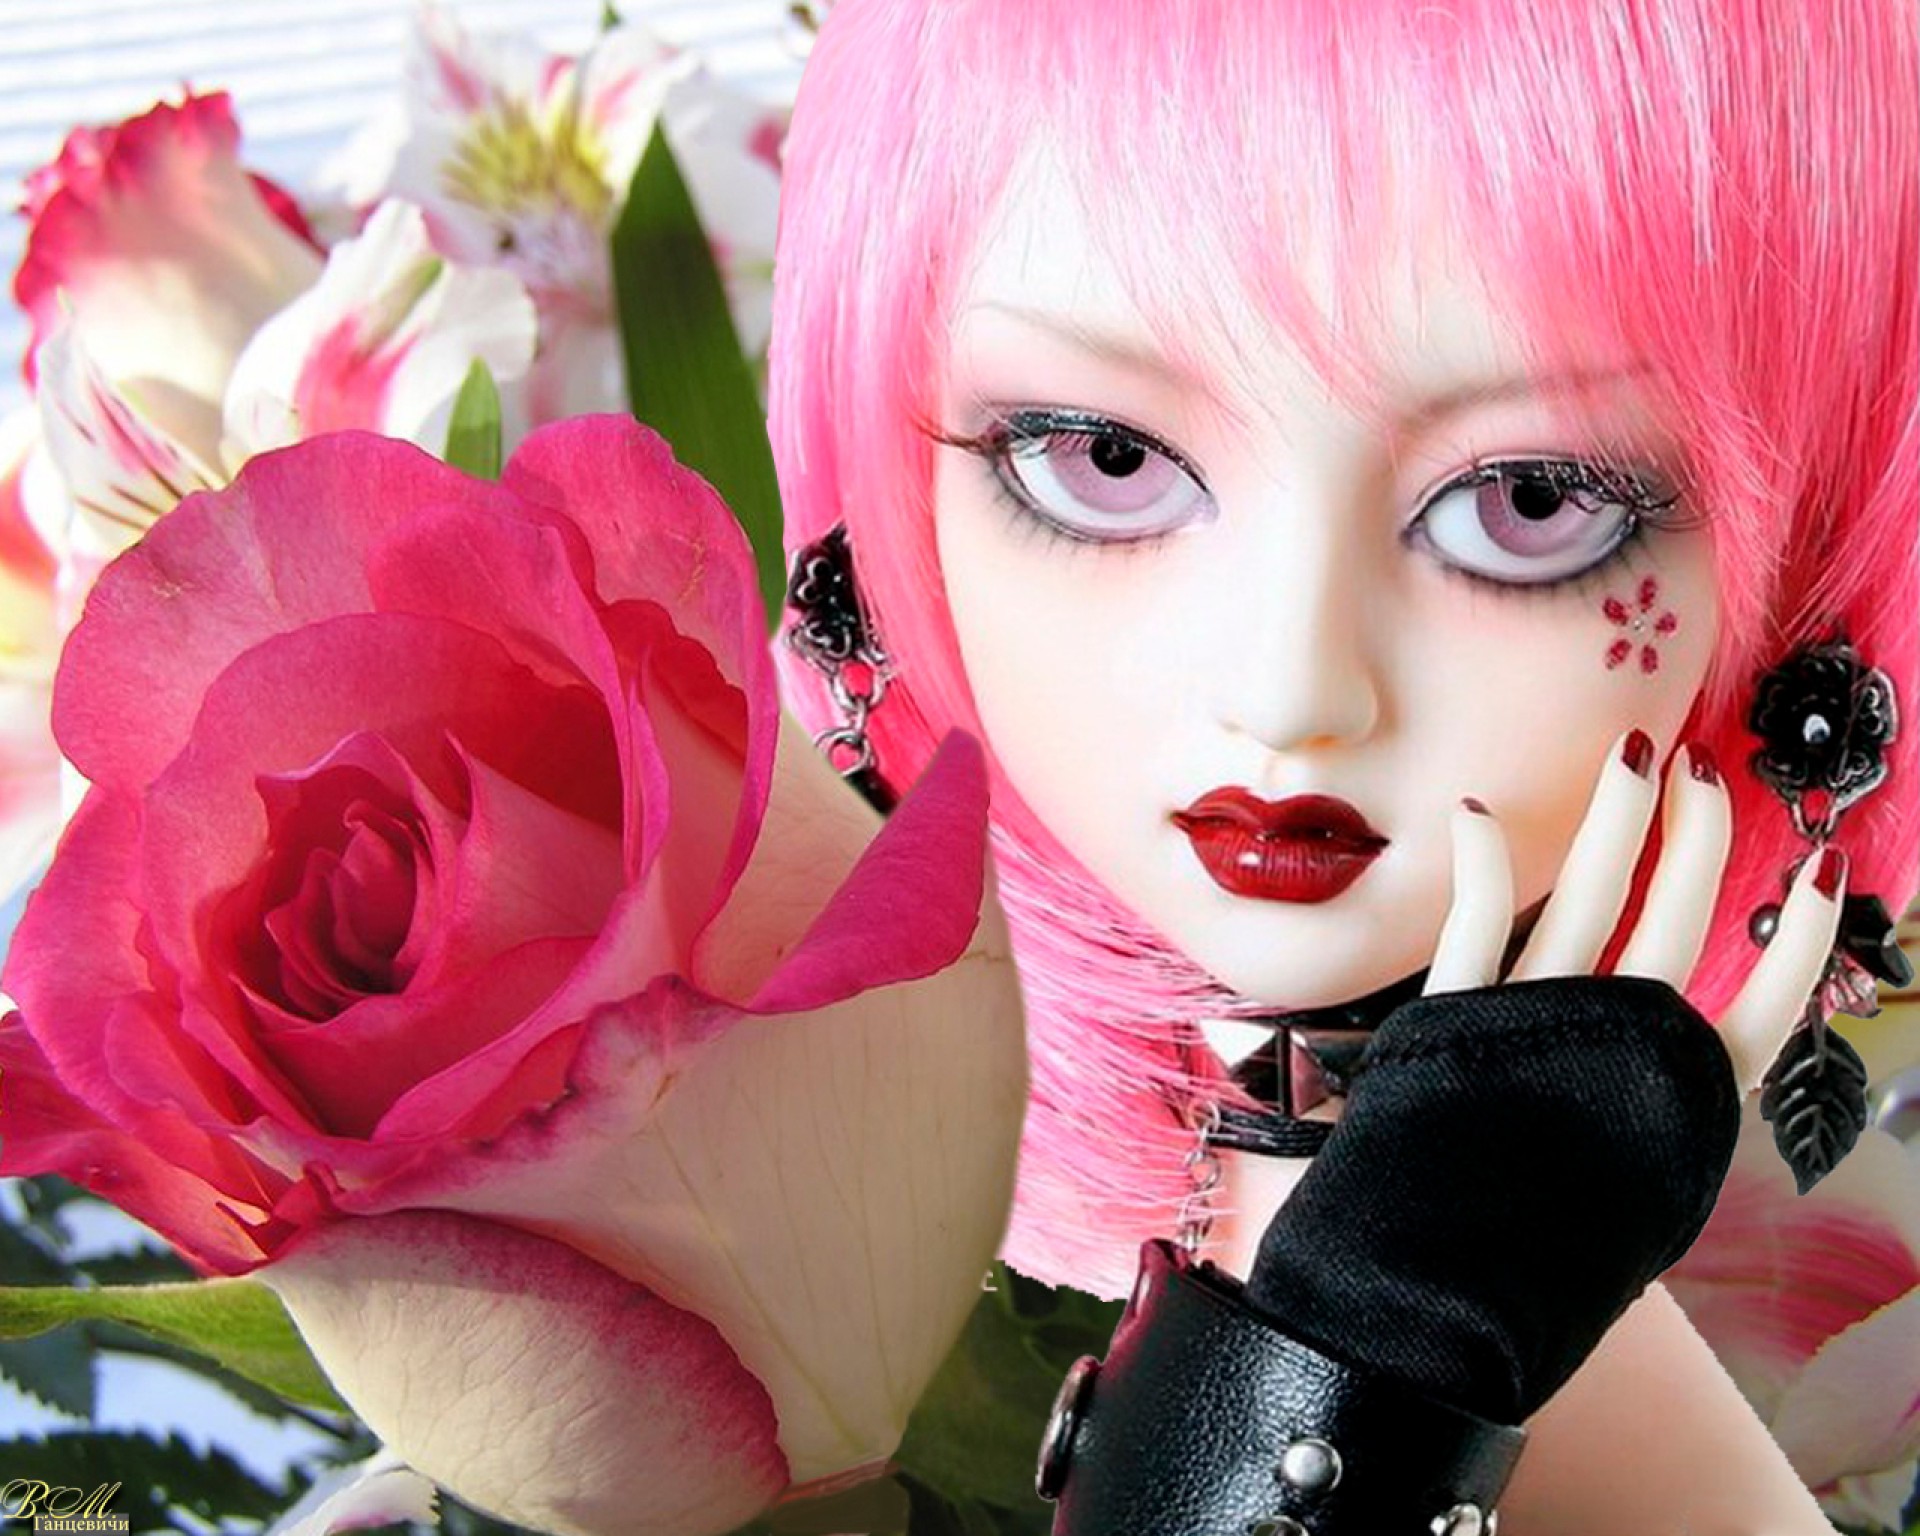 другие девушки роза красивые цветок любовь женщина девушка мода гламур романтический портрет романтика модель довольно губы элегантный